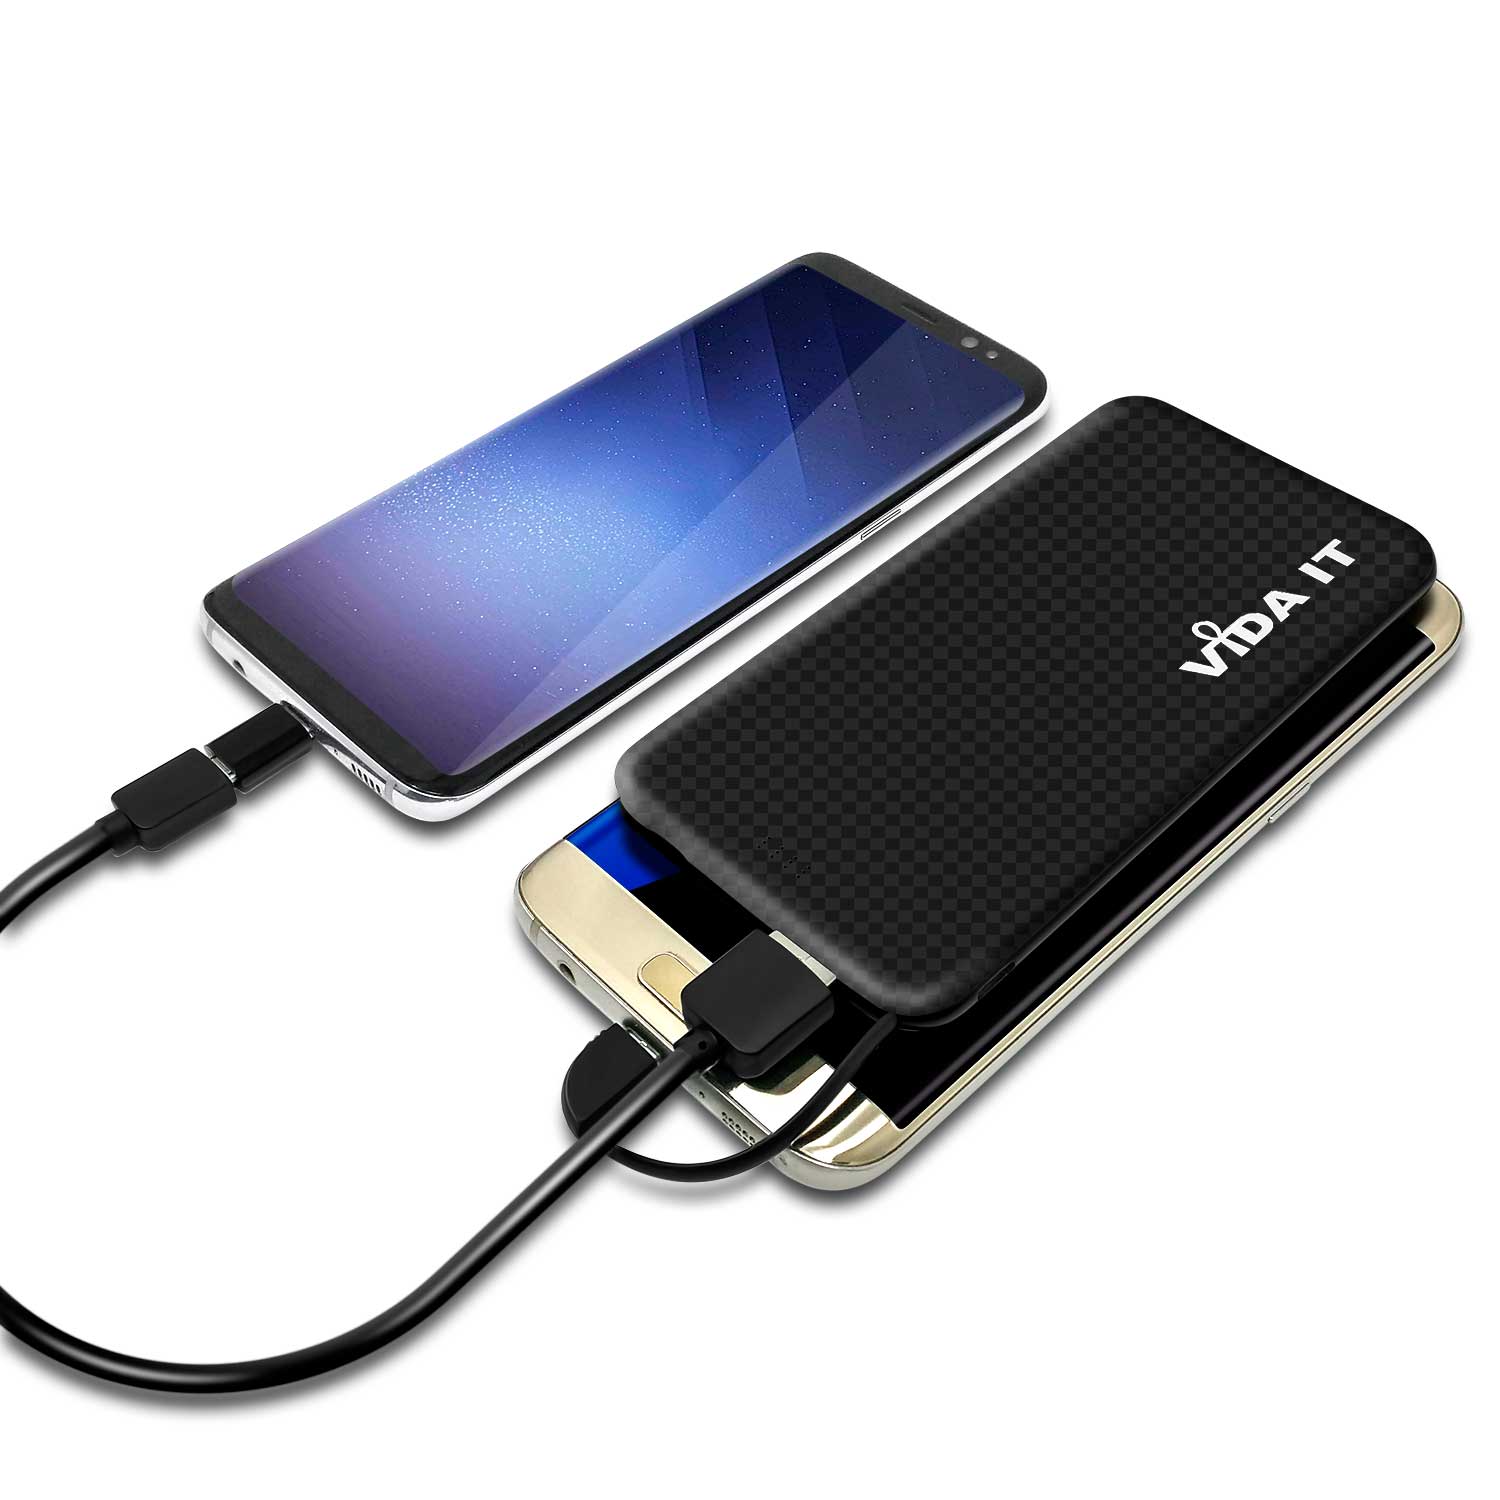 Tragbare Akku Extern PowerBank 5000mAh Ladegerät mit einem integrierten Micro-USB Kabel und iPhone Lightning und USB Typ-C Adaptern für handy schwarz